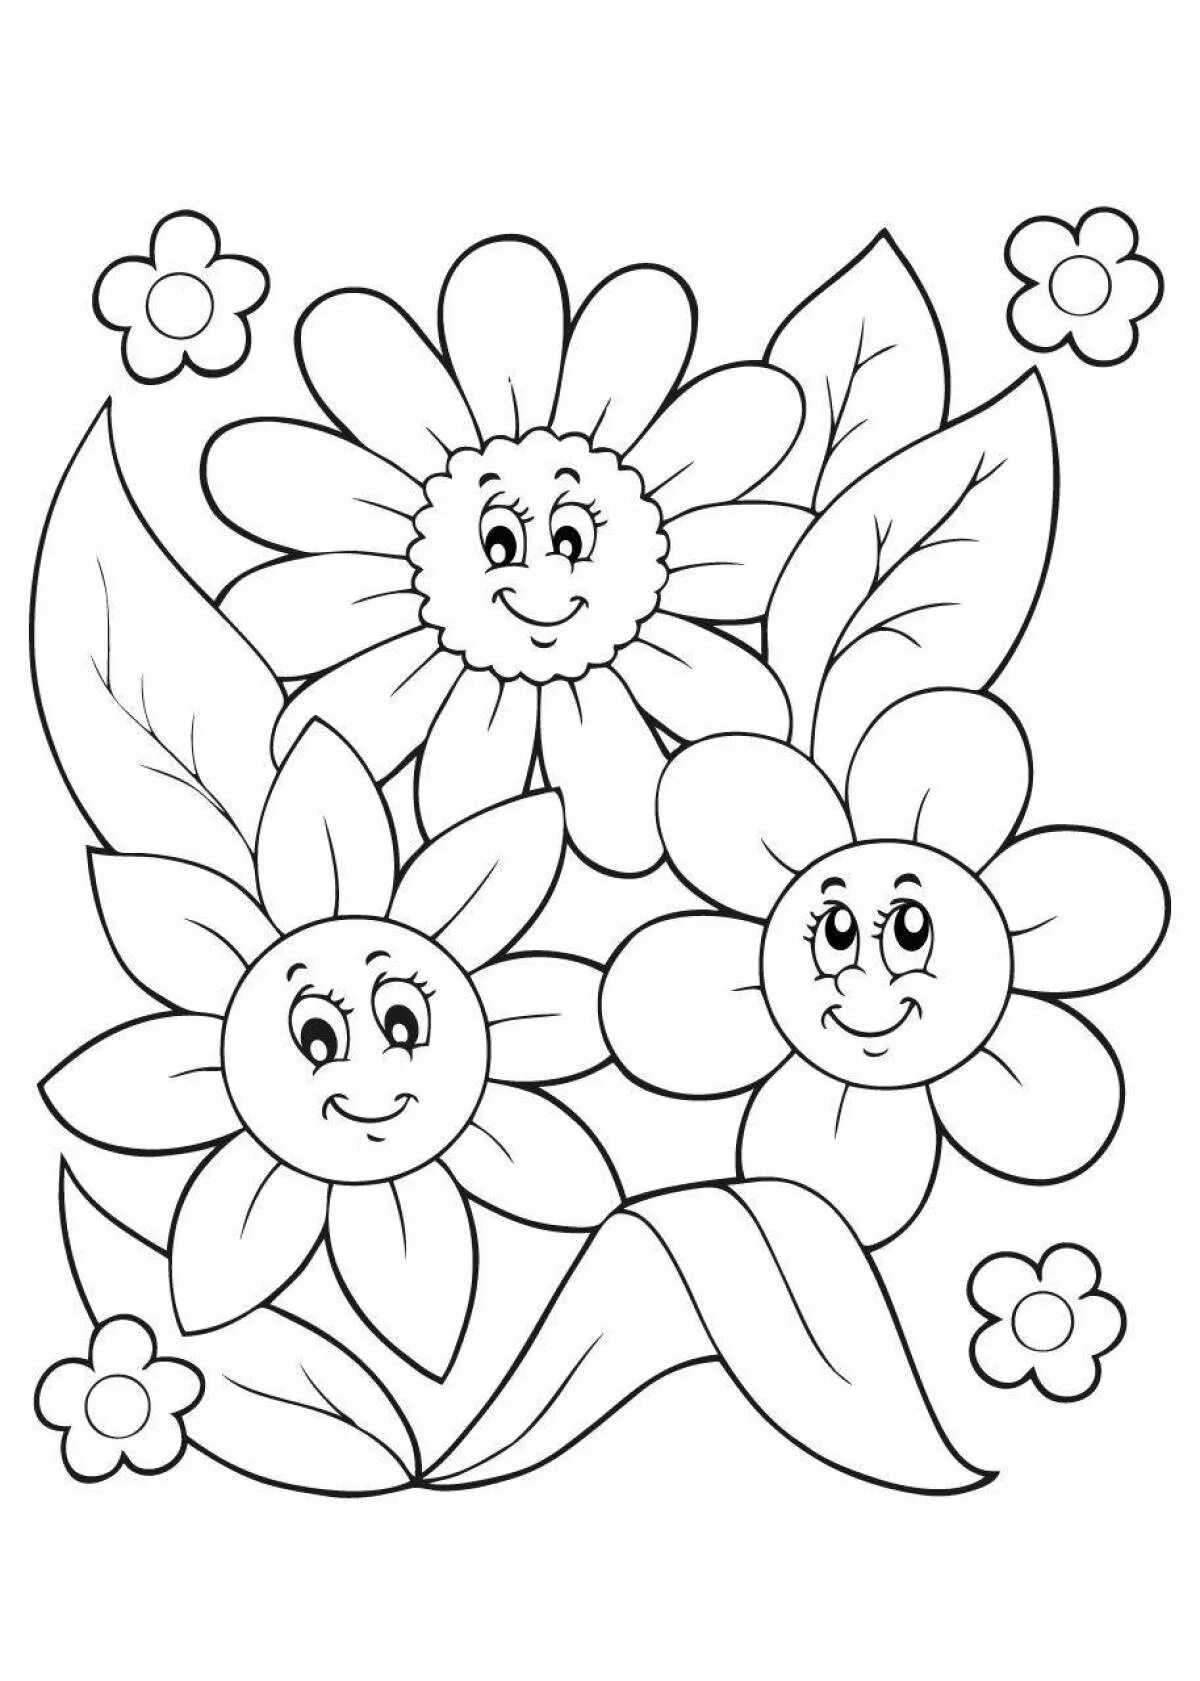 Дети цветов 4. Раскраска цветы для детей 3-4. Цветочек раскраска для детей. Раскраска цветы для детей 5-6 лет. Цветочки раскраска для детей 4-5 лет.